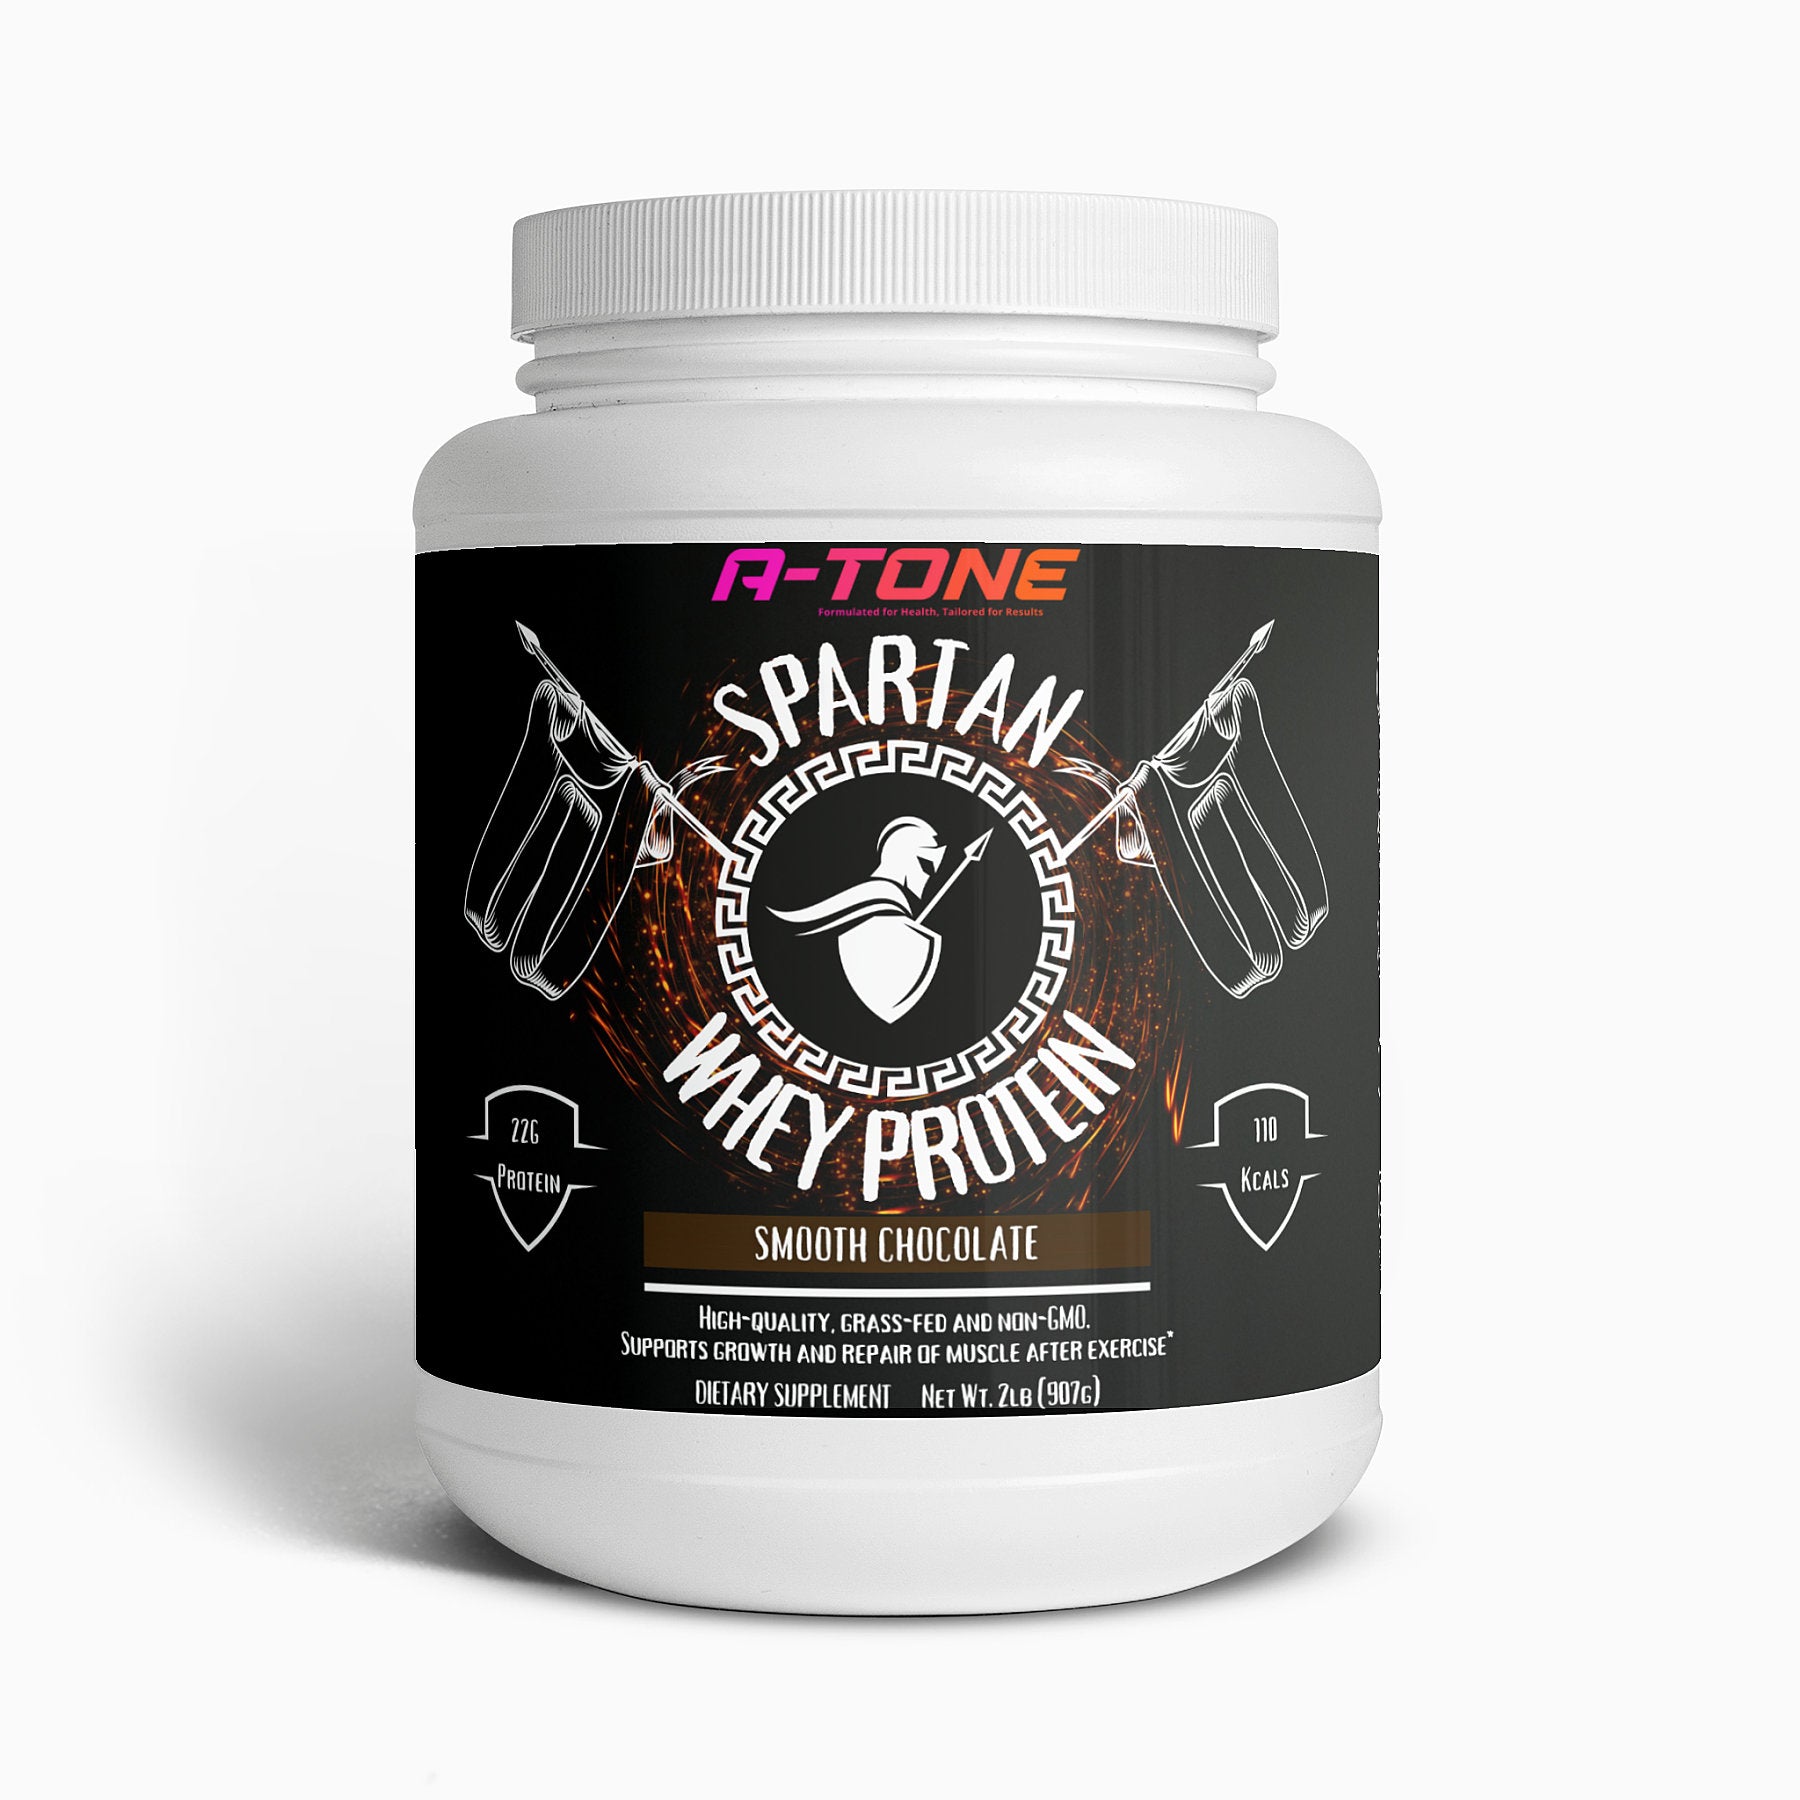 Spartan Whey Protein